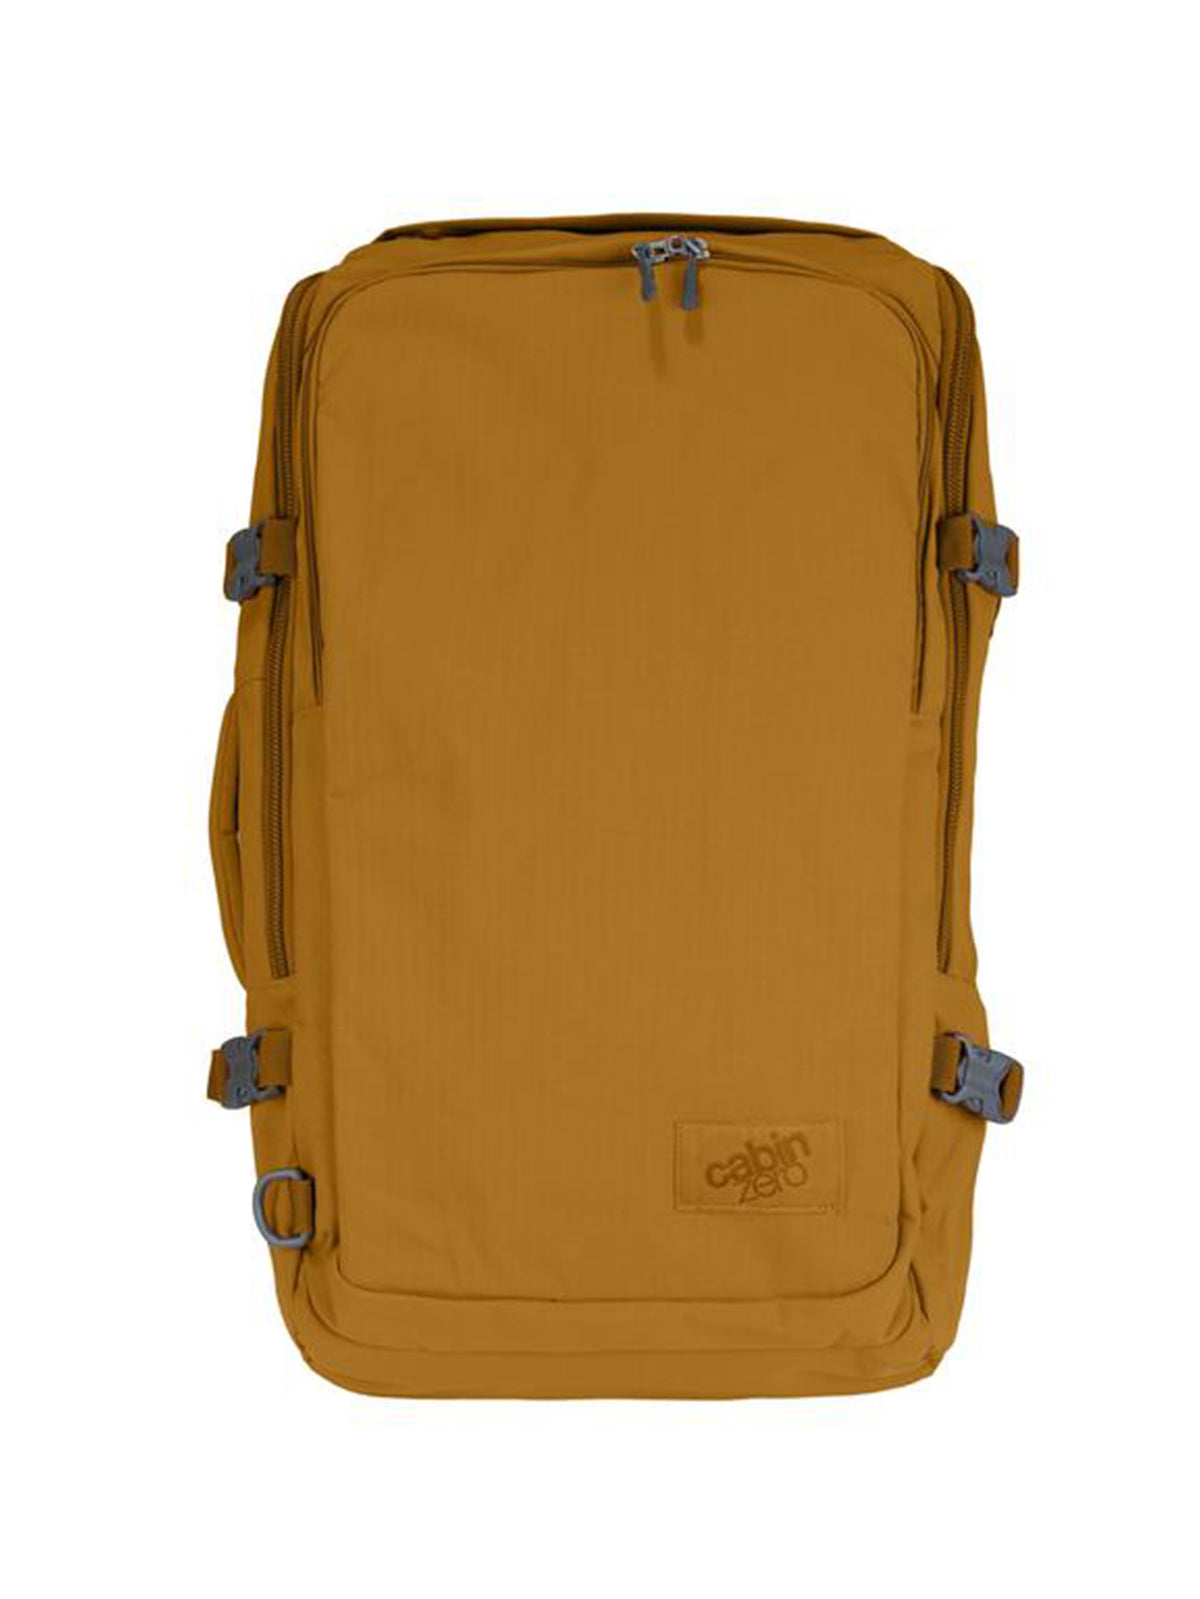 Cabinzero Adventure Pro Cabin Bag 42L in Sahara Sand Color